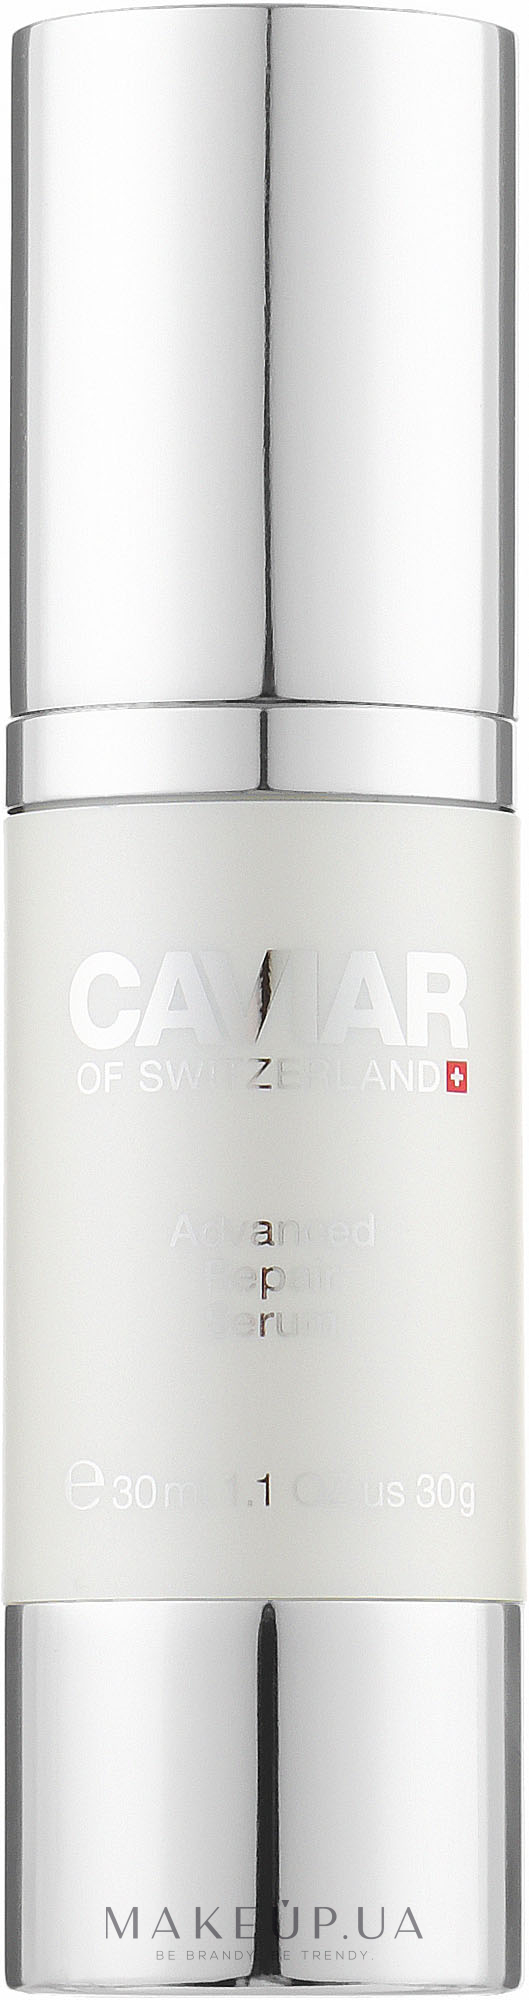 Улучшенная восстанавливающая сыворотка для лица - Caviar Of Switzerland Advanced Repair Serum — фото 30ml